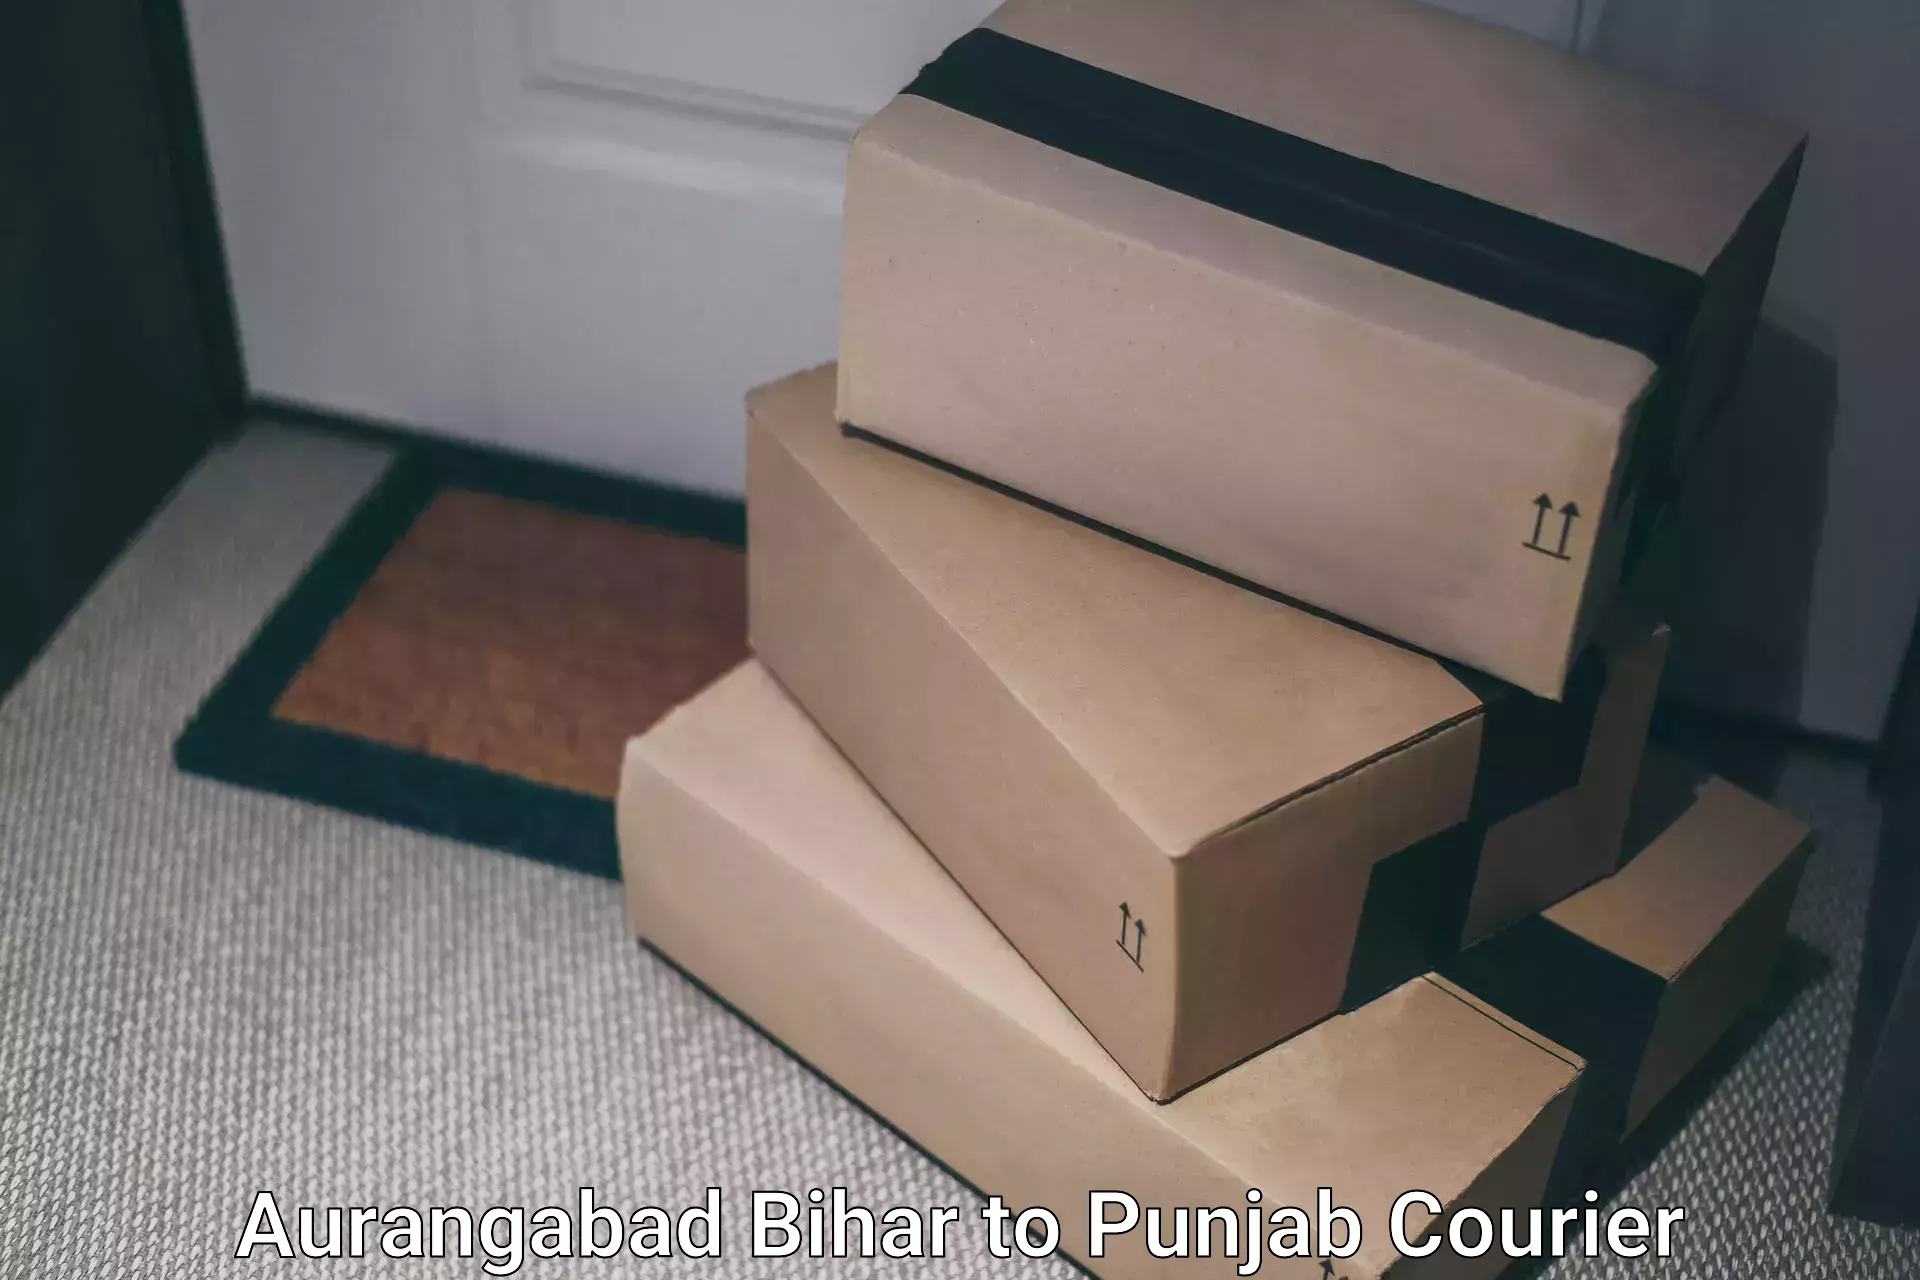 Personalized courier solutions Aurangabad Bihar to Kotkapura